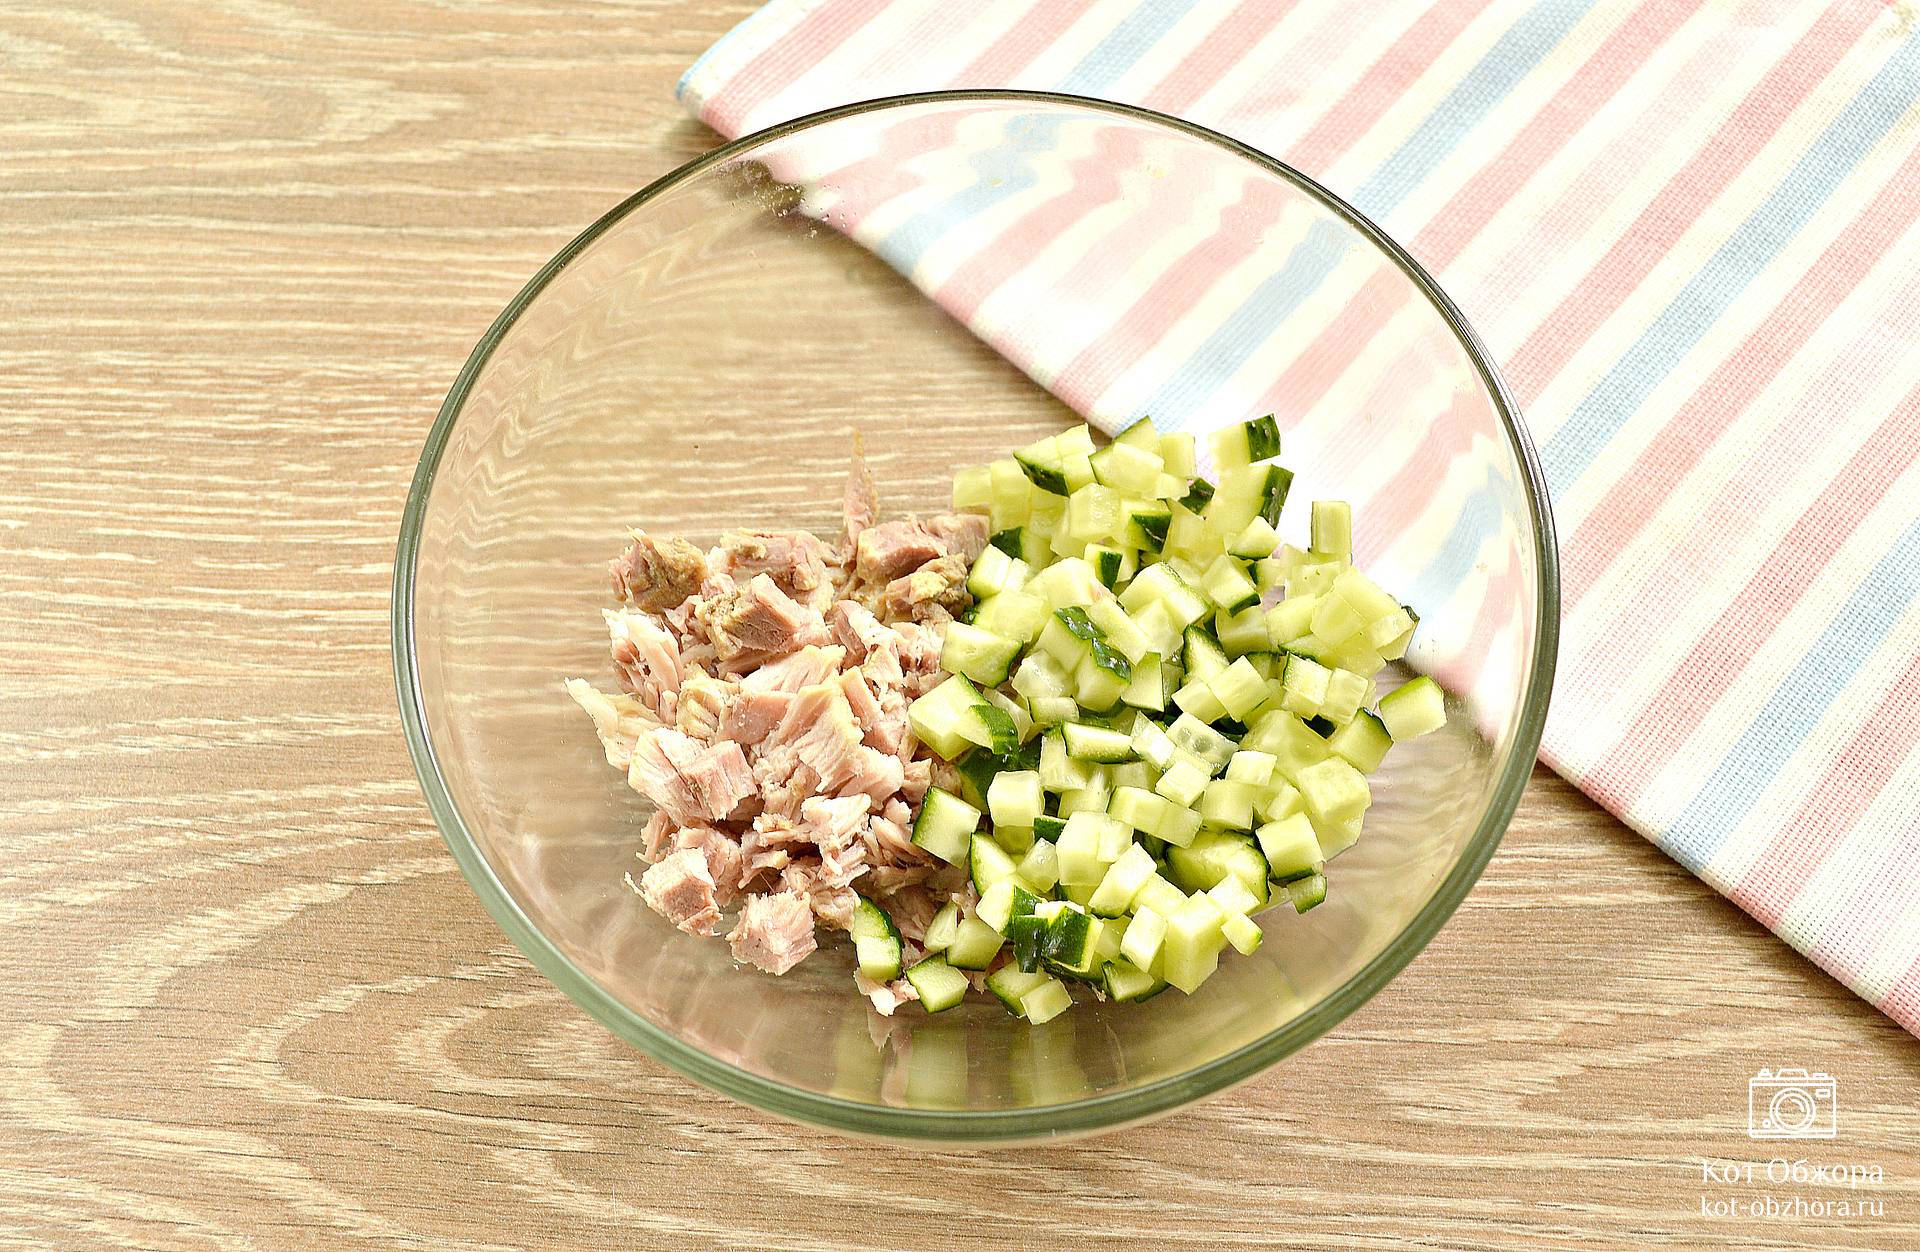 Праздничный салат оливье с колбасой и свежим огурцом по классическому рецепту